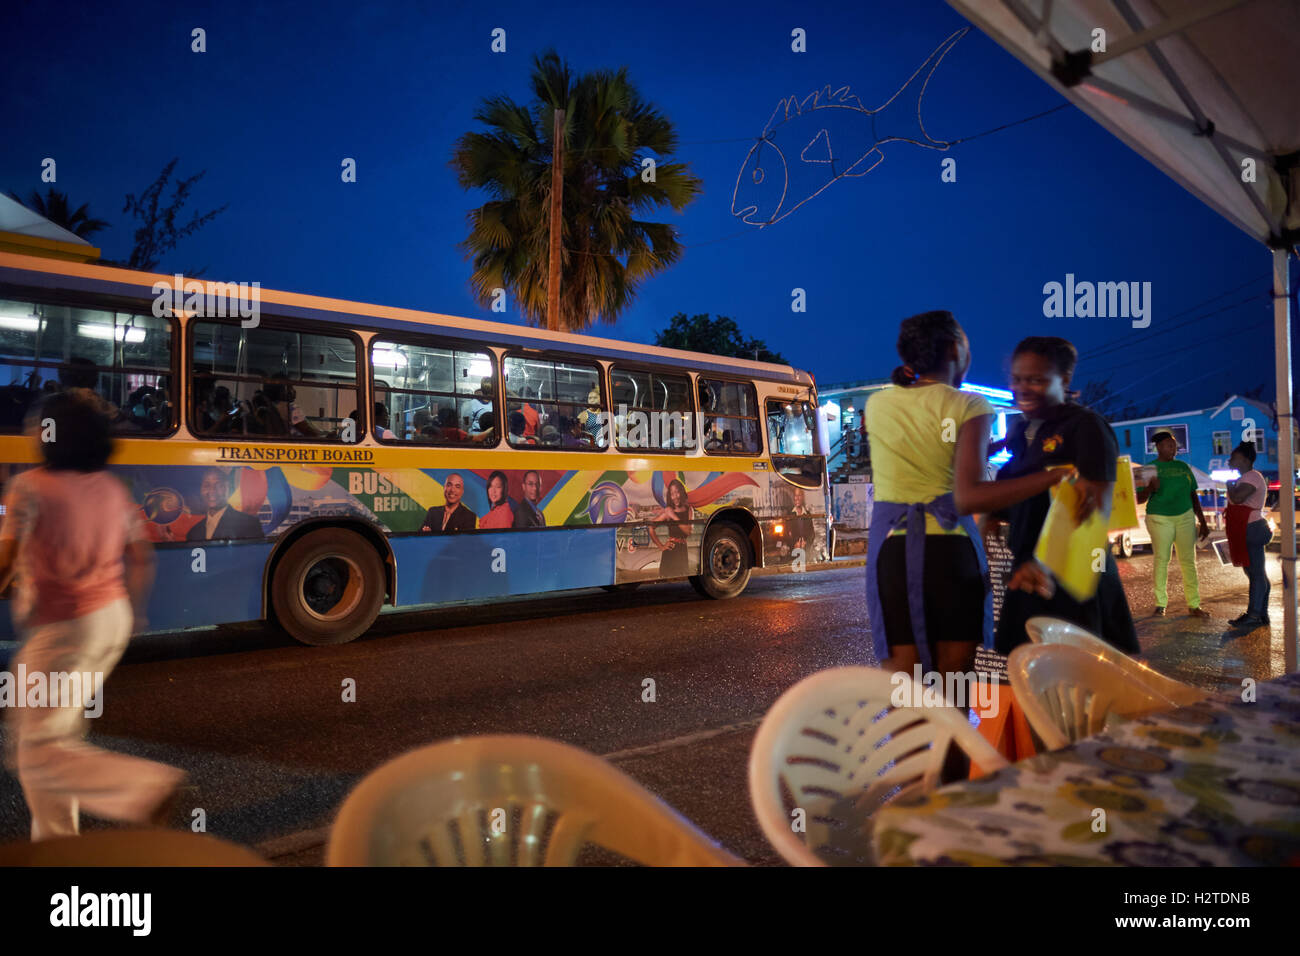 Barbados Transport Board Bus Küstenstadt Kirchengemeinde Christuskirche Regierung Service blau gelb beschäftigt Straße Transport transporter Stockfoto